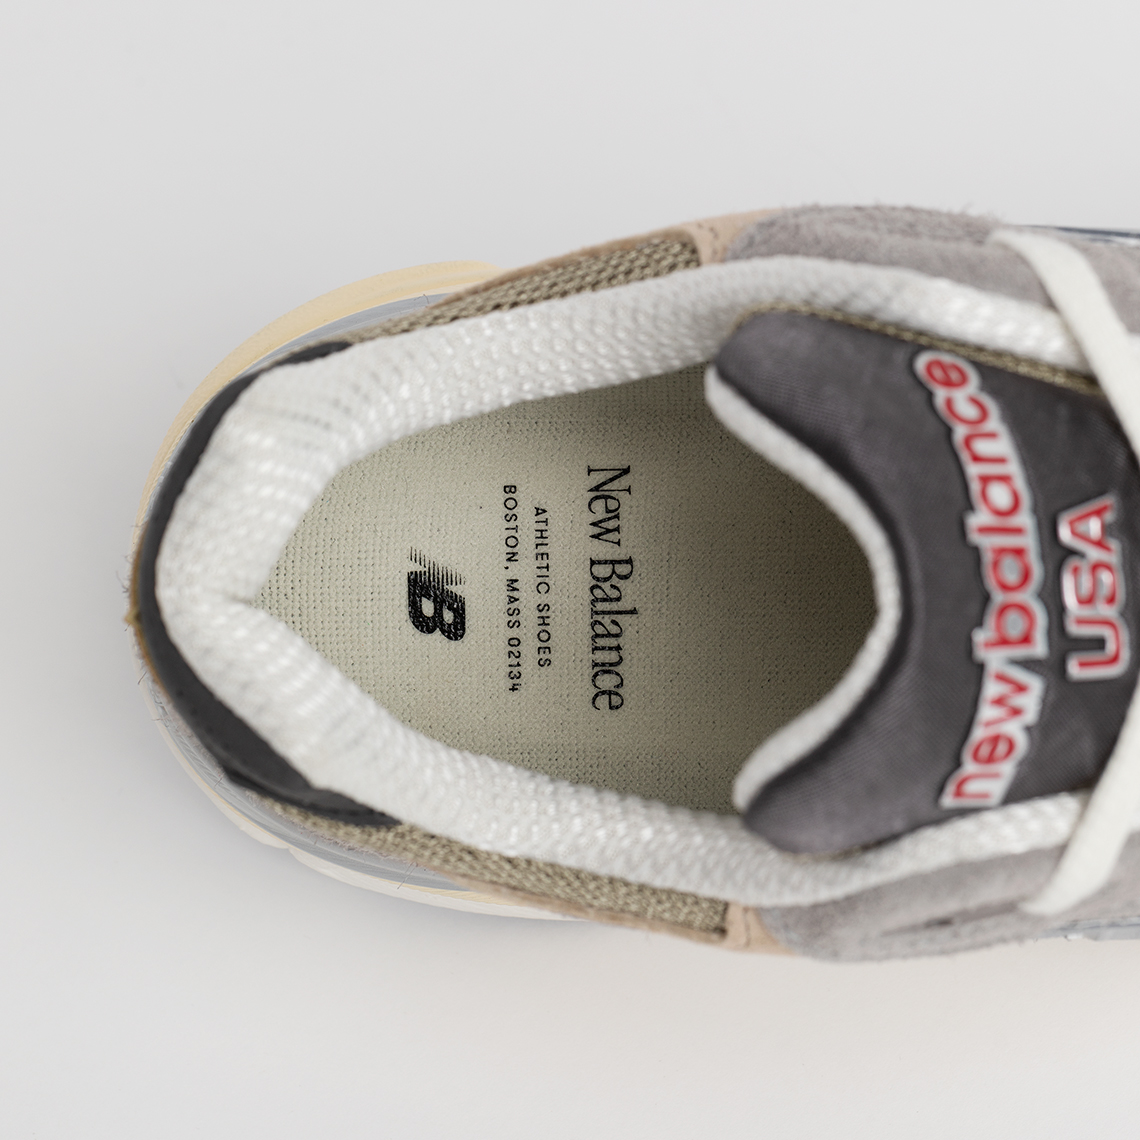 zapatillas de running New Balance entrenamiento talla 45.5 baratas menos de 60